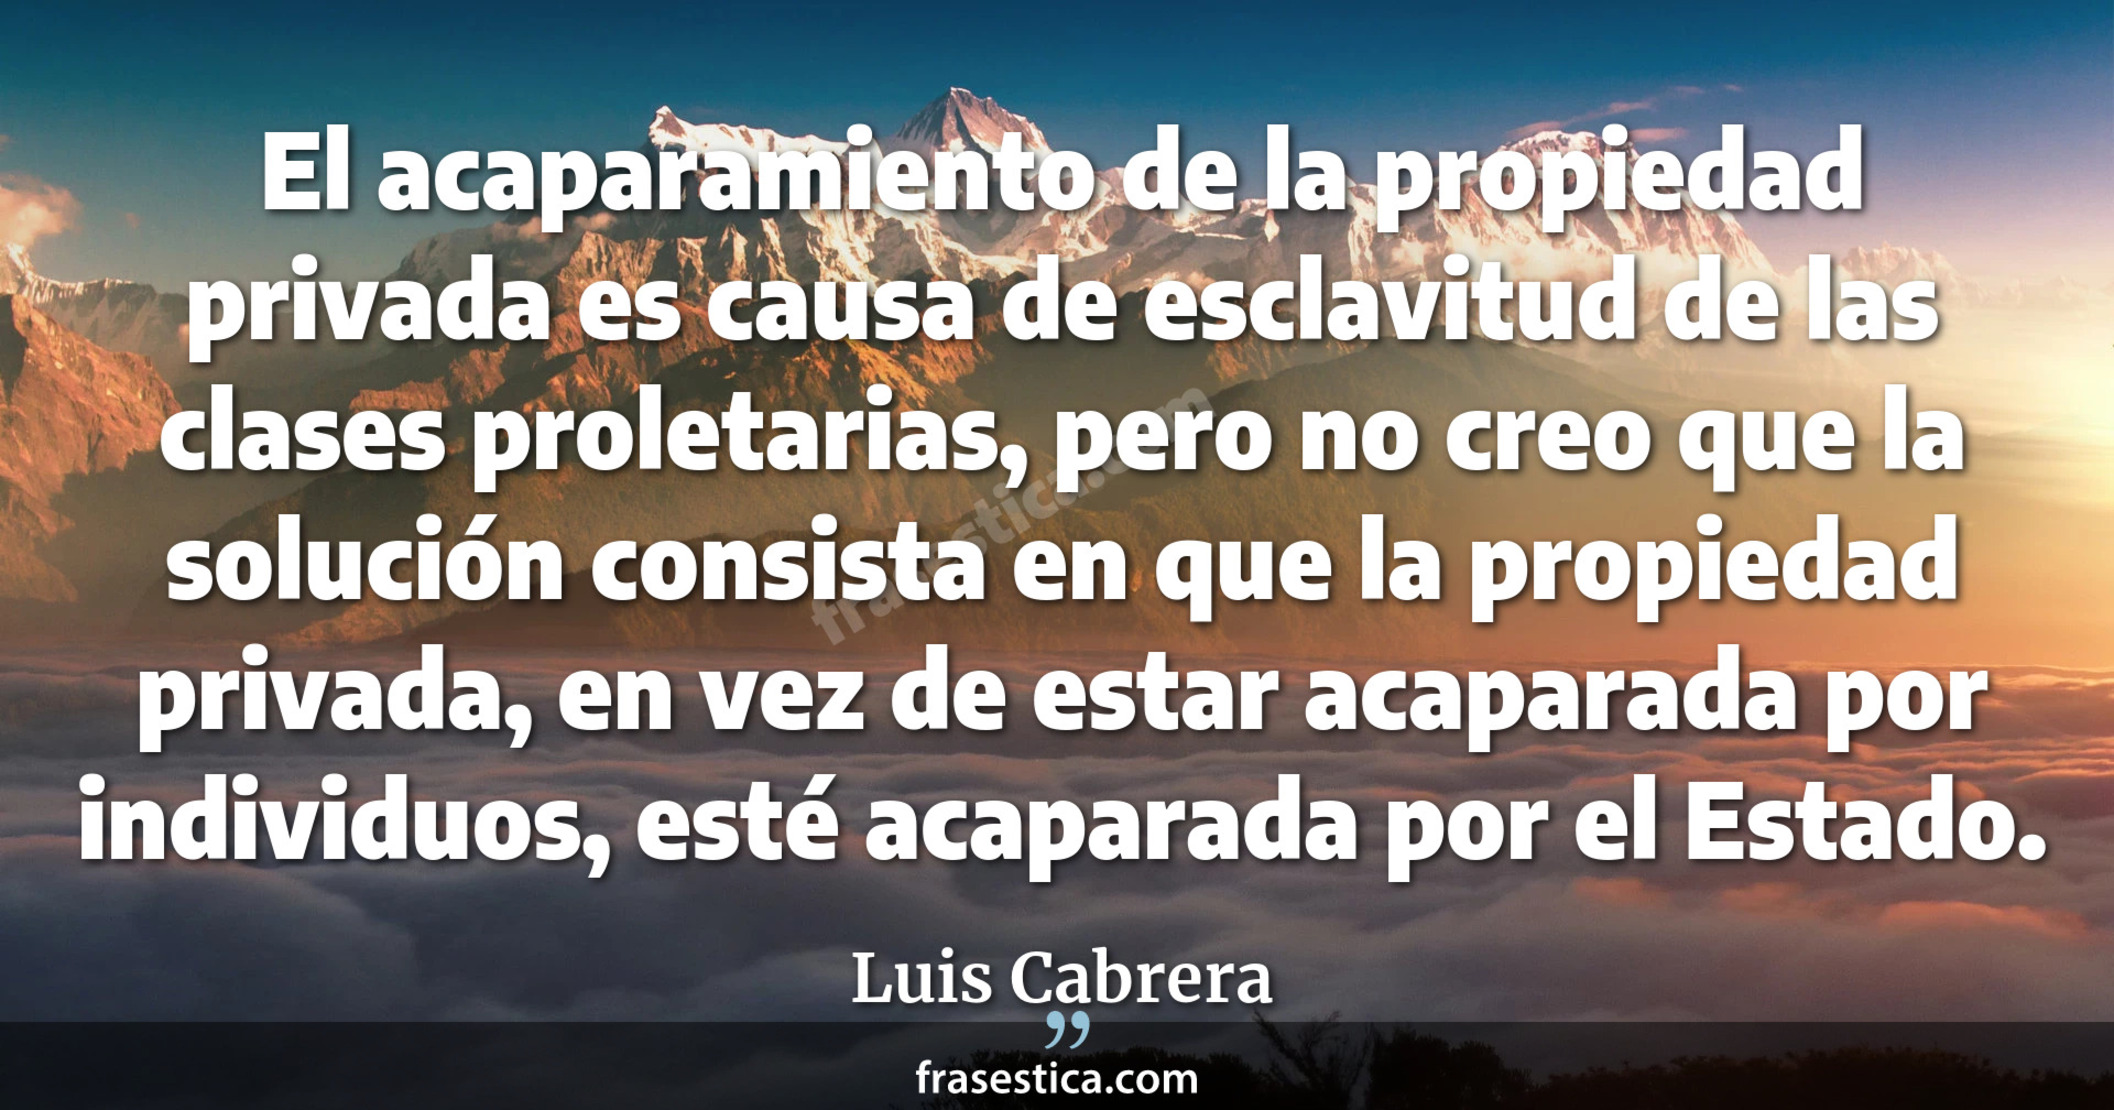 El acaparamiento de la propiedad privada es causa de esclavitud de las clases proletarias, pero no creo que la solución consista en que la propiedad privada, en vez de estar acaparada por individuos, esté acaparada por el Estado. - Luis Cabrera